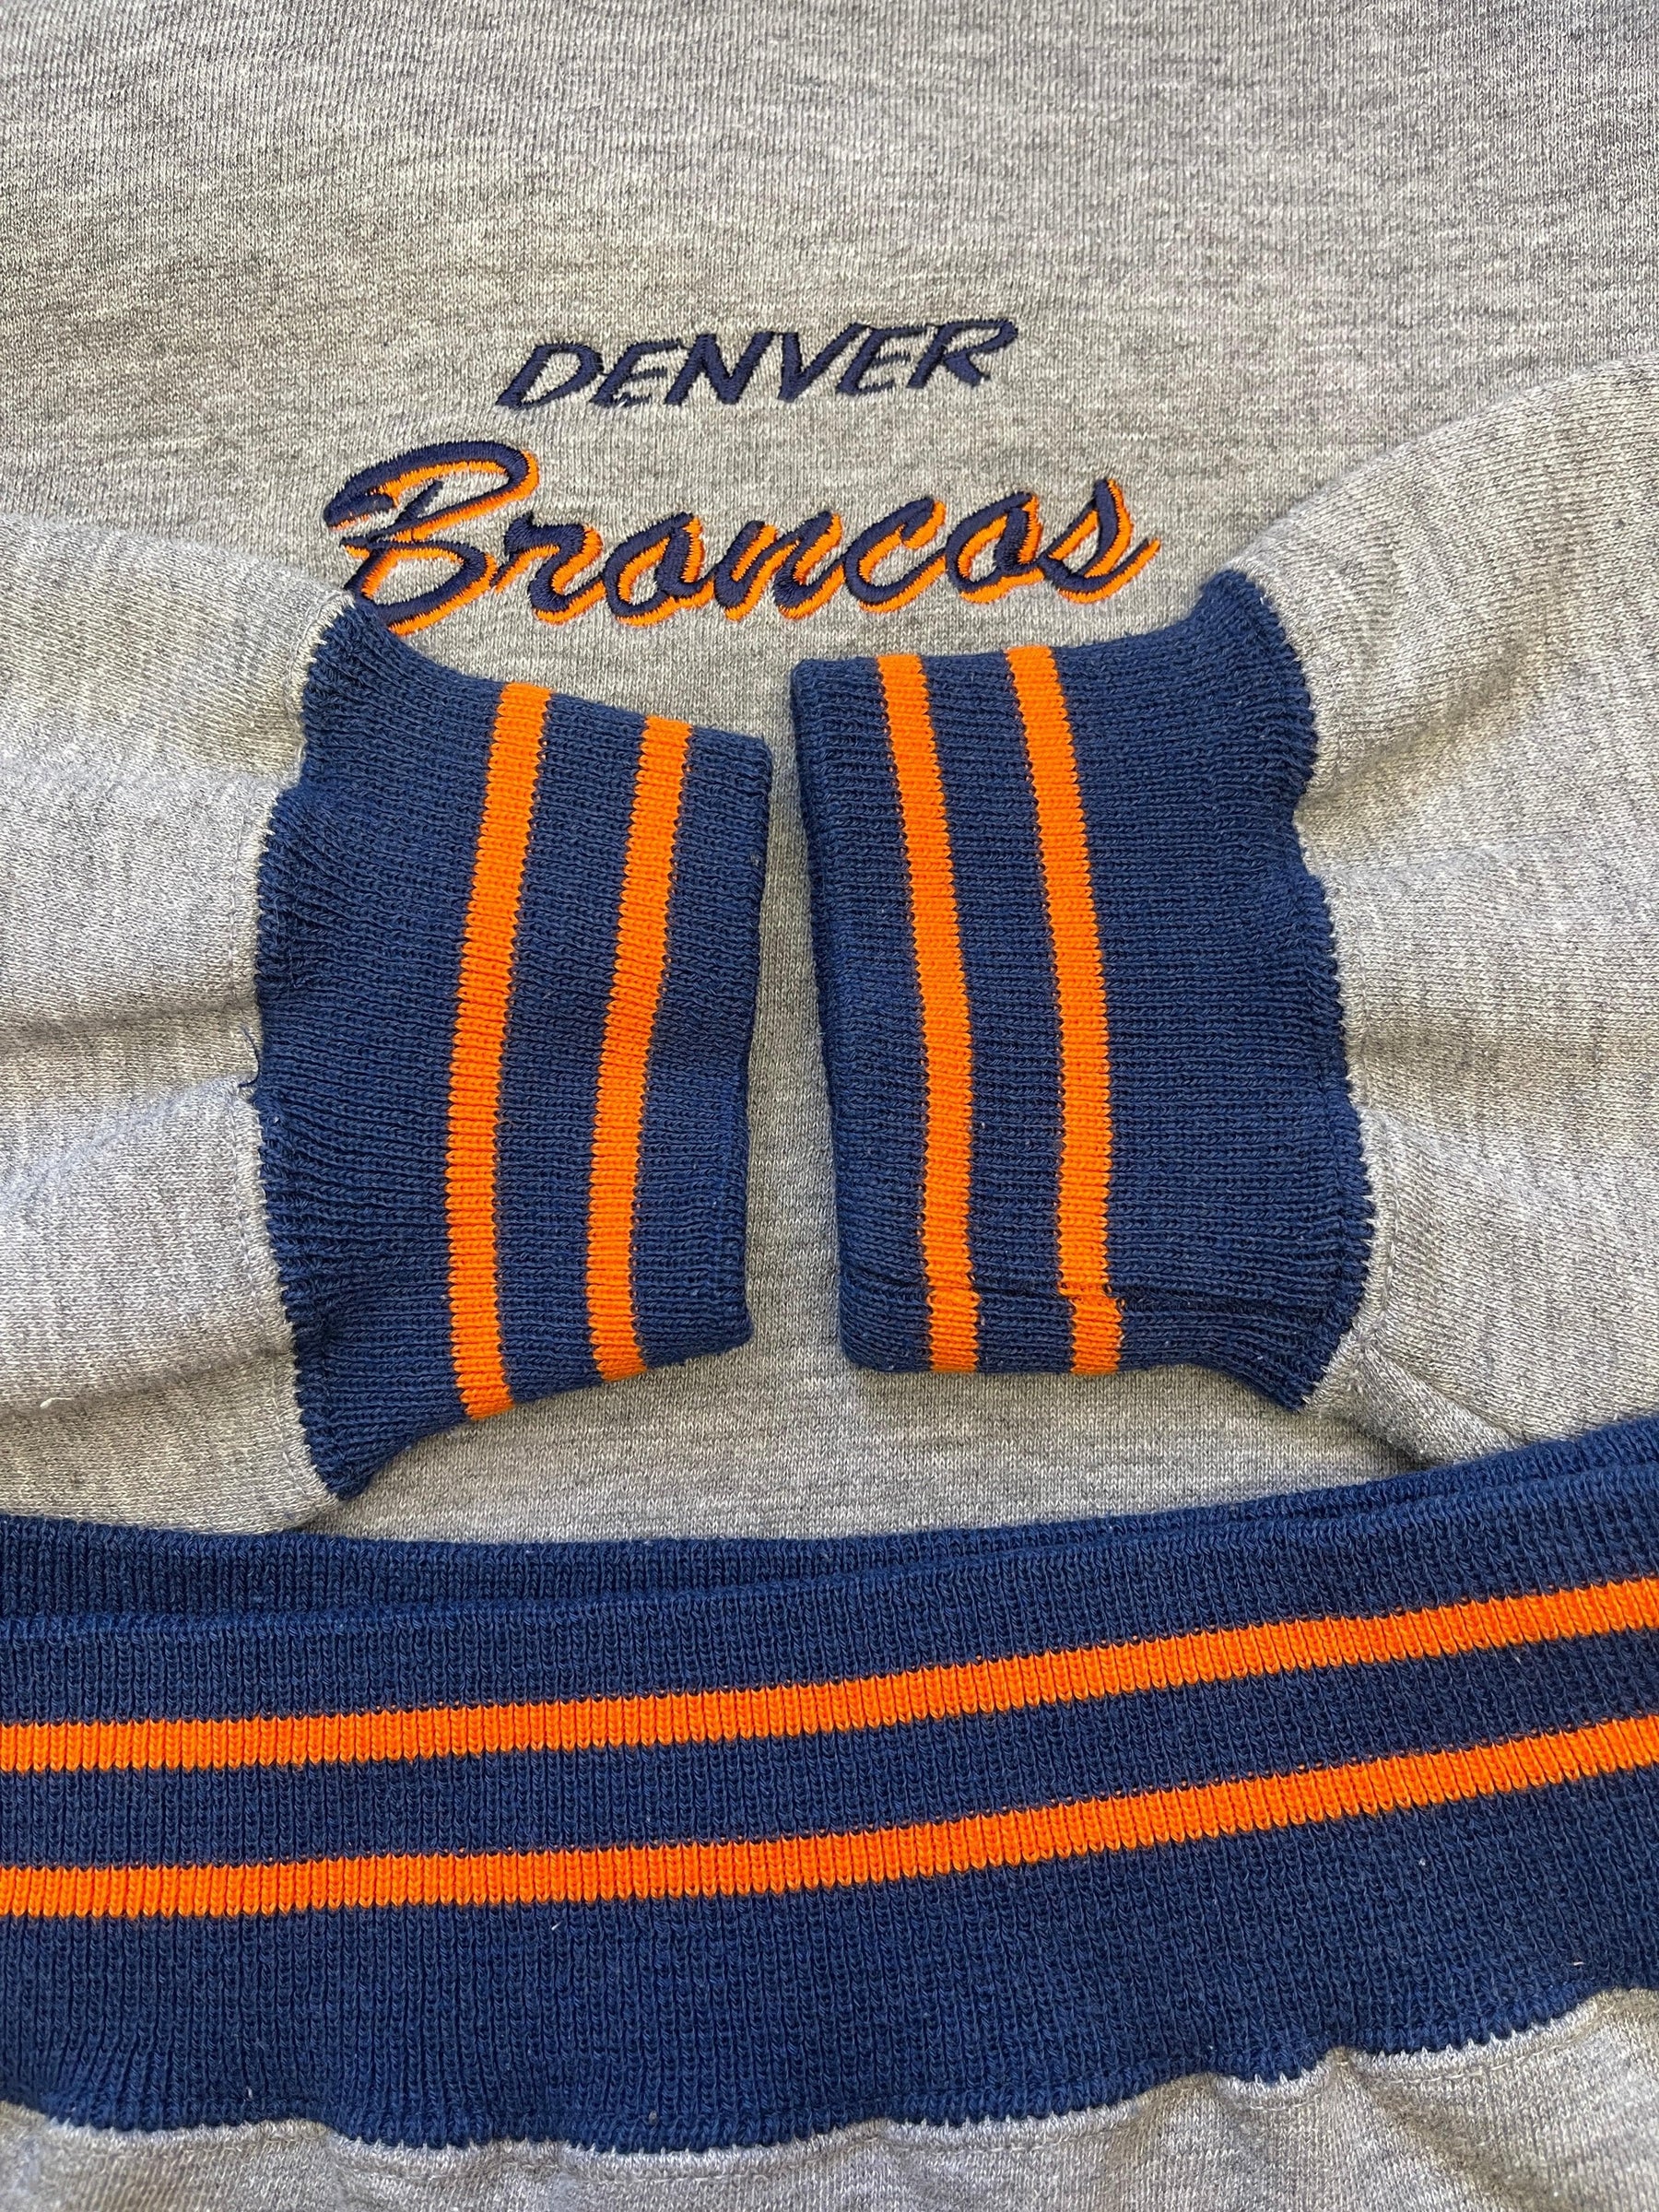 NFL Denver Broncos Logo 7 Vintage Sweatshirt Men's Large